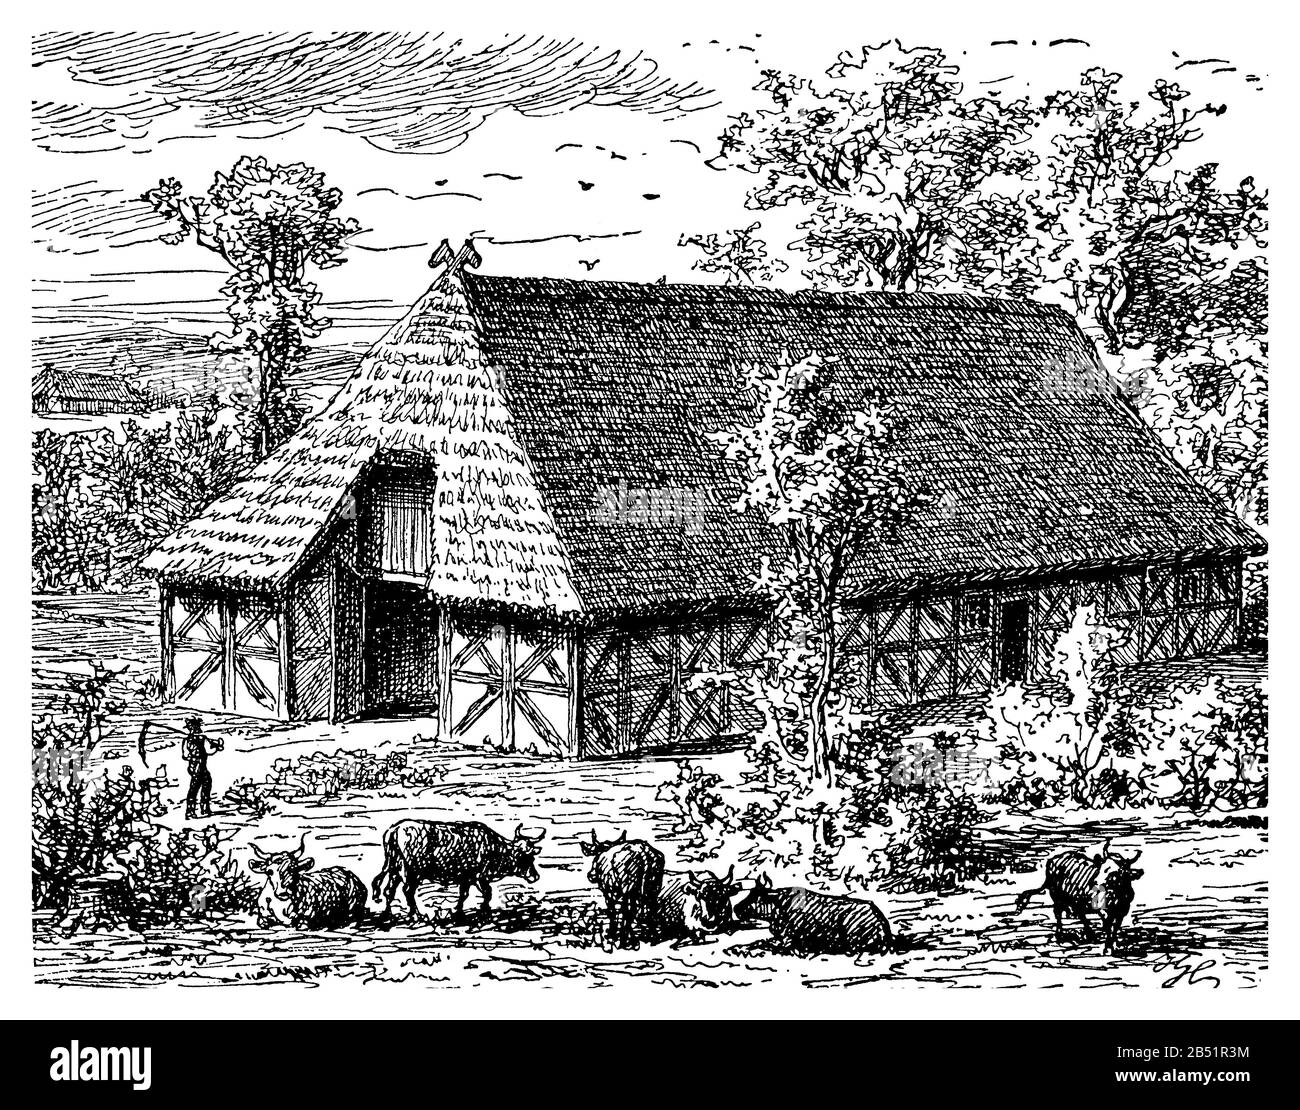 Sassonia, Germania - paesaggio rurale con casa colonica a graticcio con tetto di paglia coperto da paglia Foto Stock